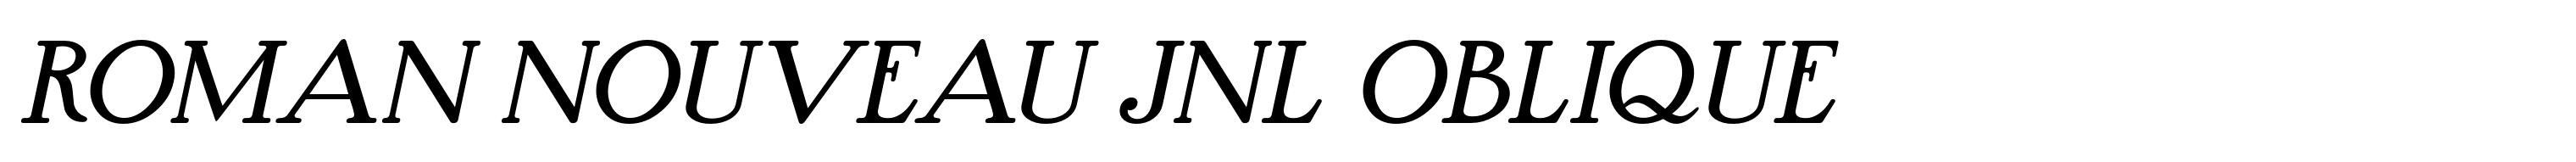 Roman Nouveau JNL Oblique